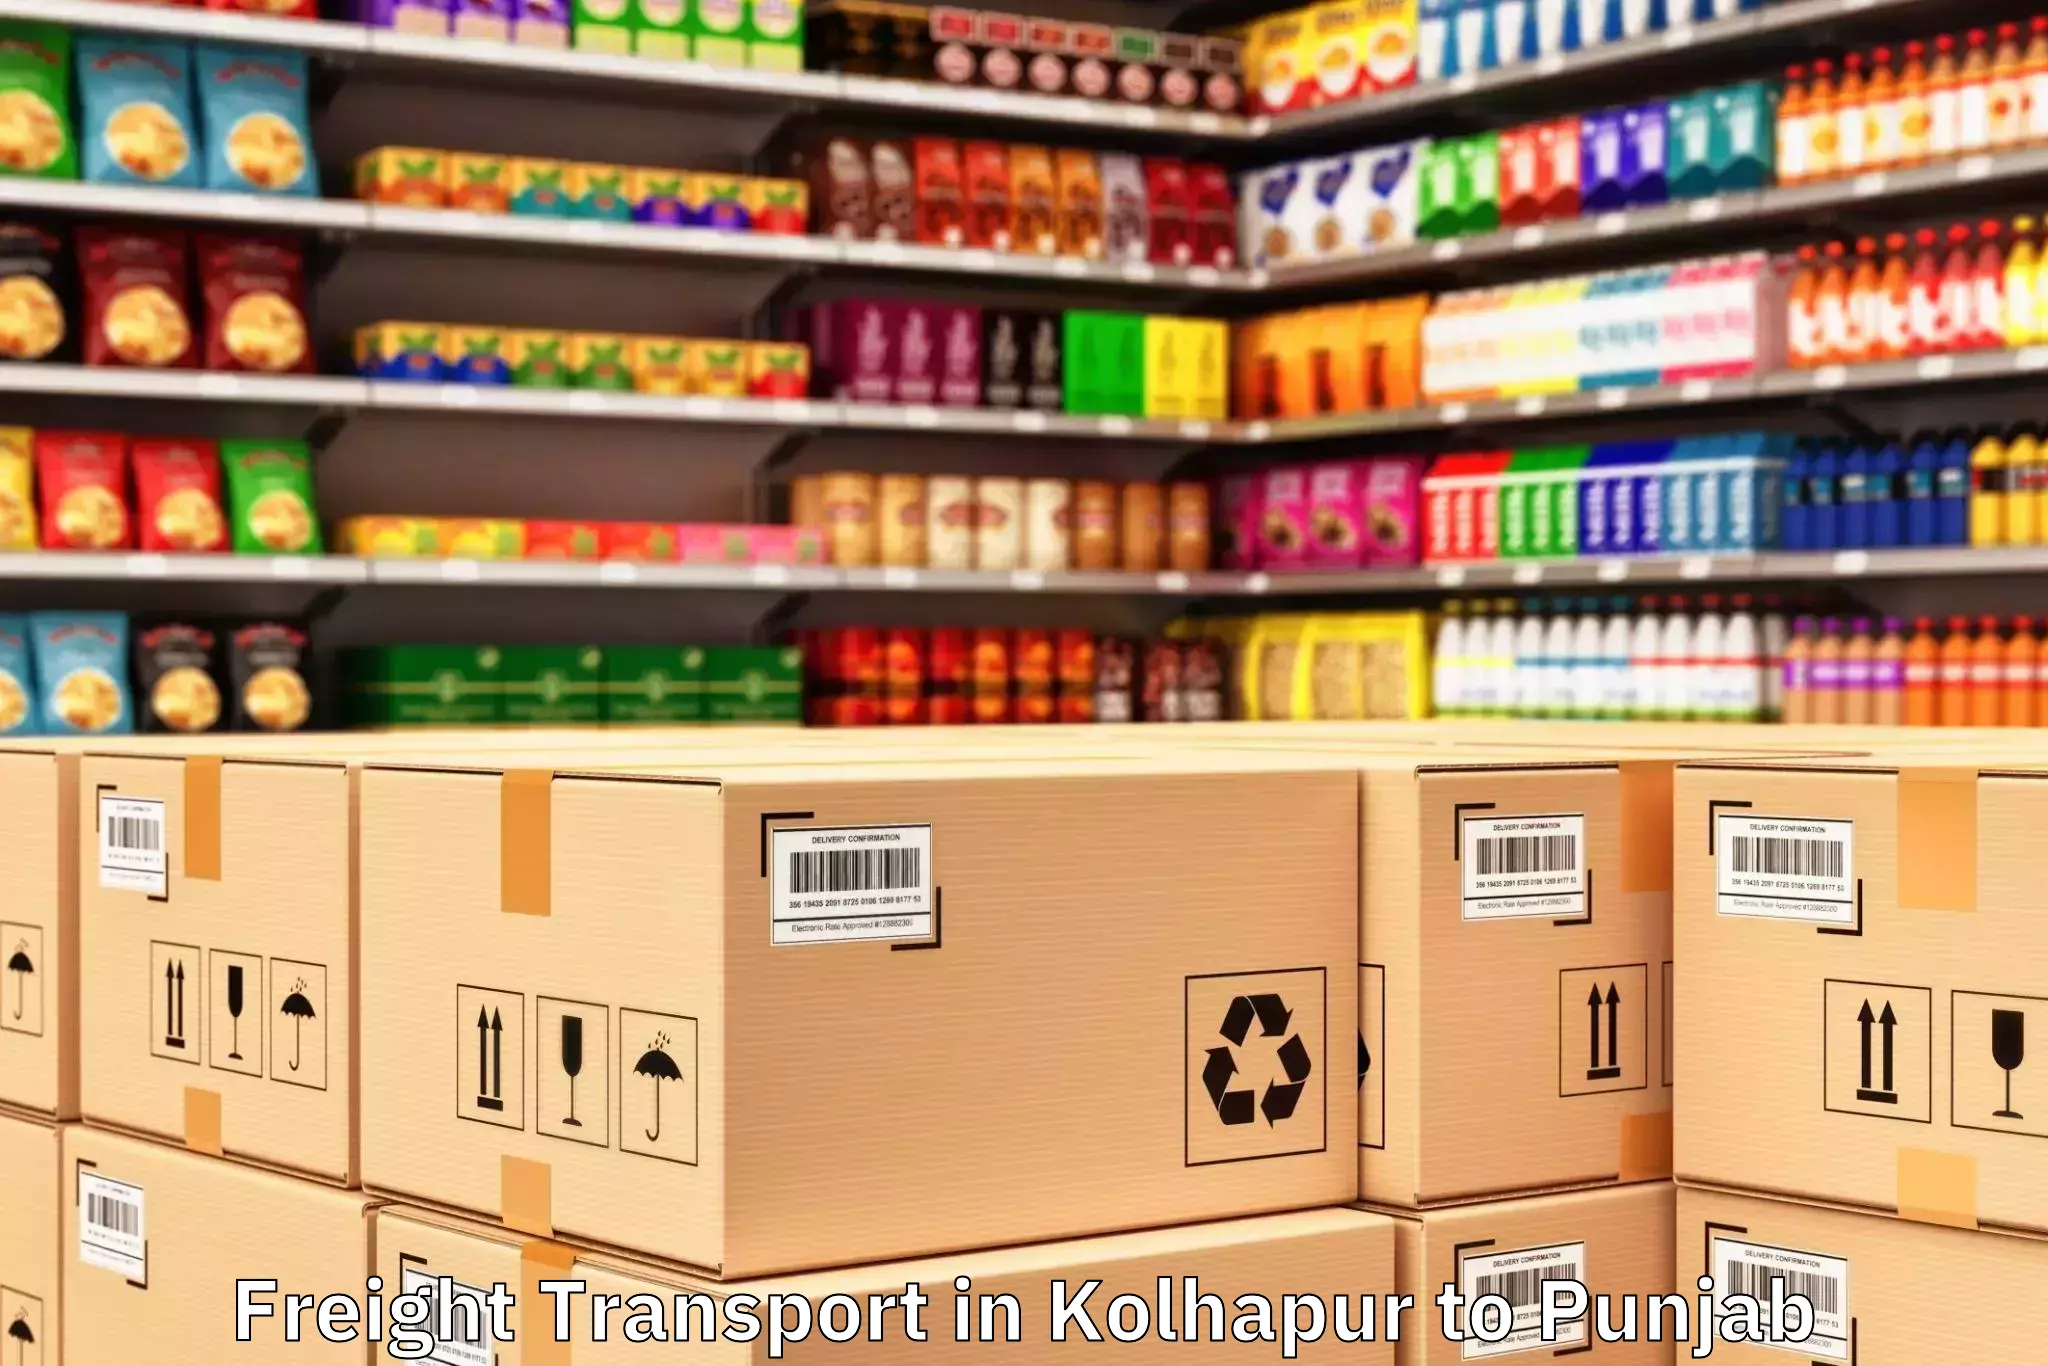 Easy Kolhapur to Punjab Freight Transport Booking